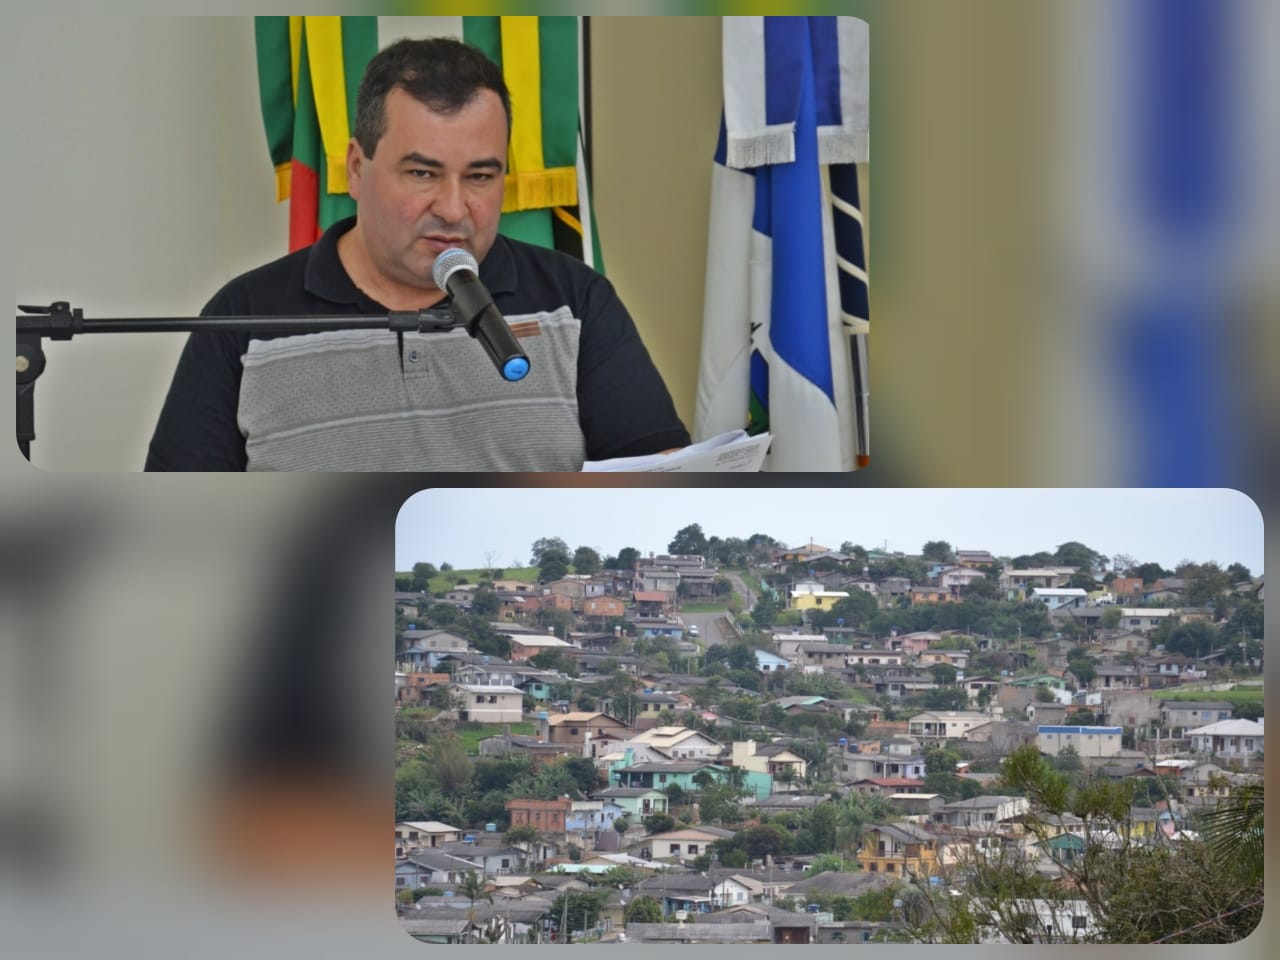 Bacana solicita ao Executivo a realização de operação tapa-buracos no bairro Cohab